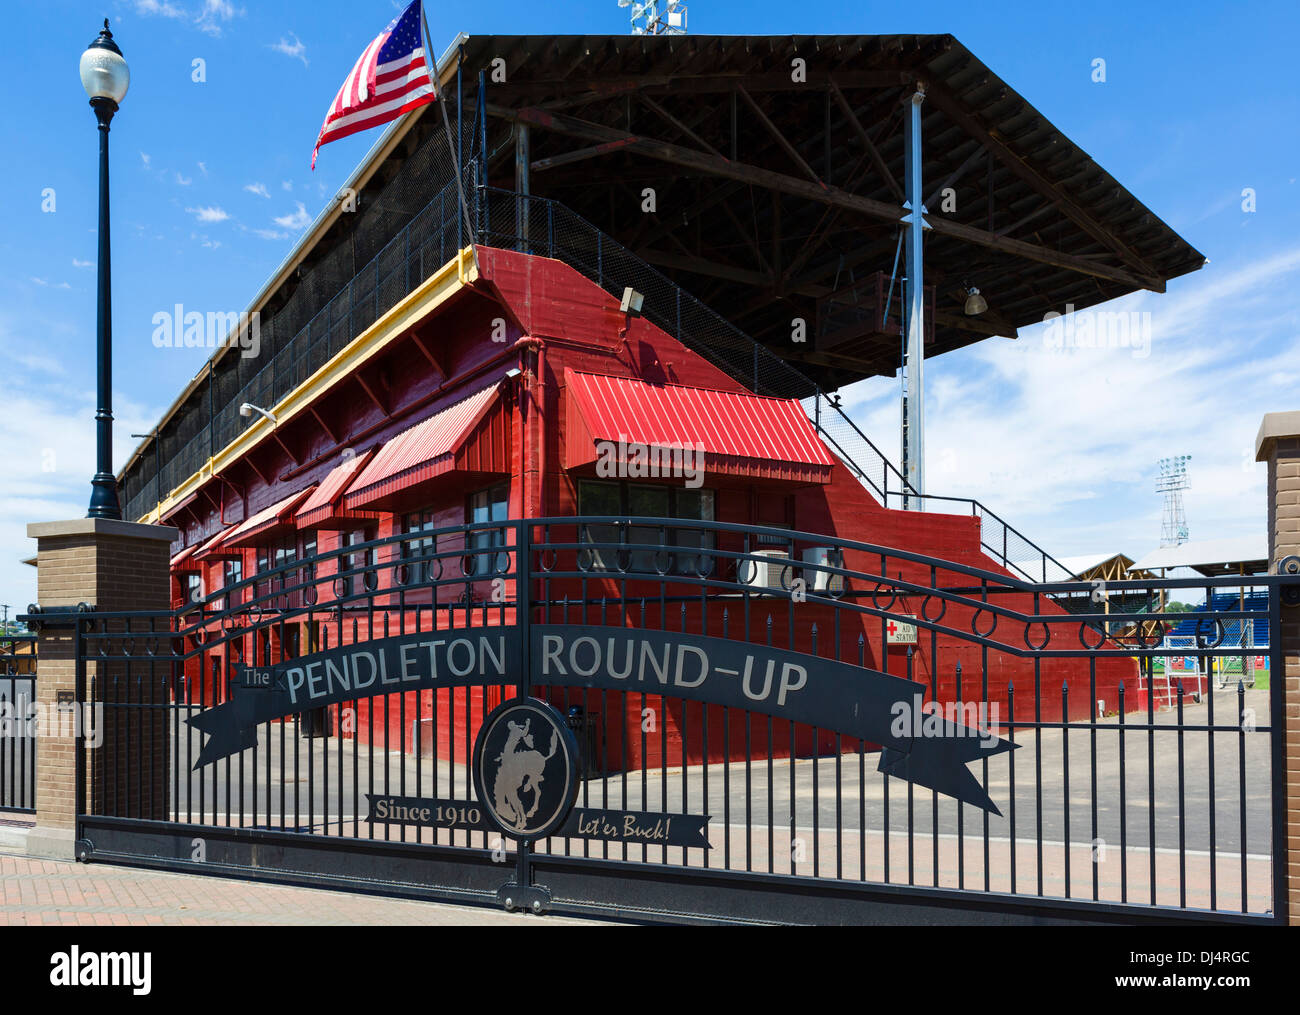 Entrance to the Pendleton Round-Up rodeo stadium, Pendleton, Oregon, USA Stock Photo